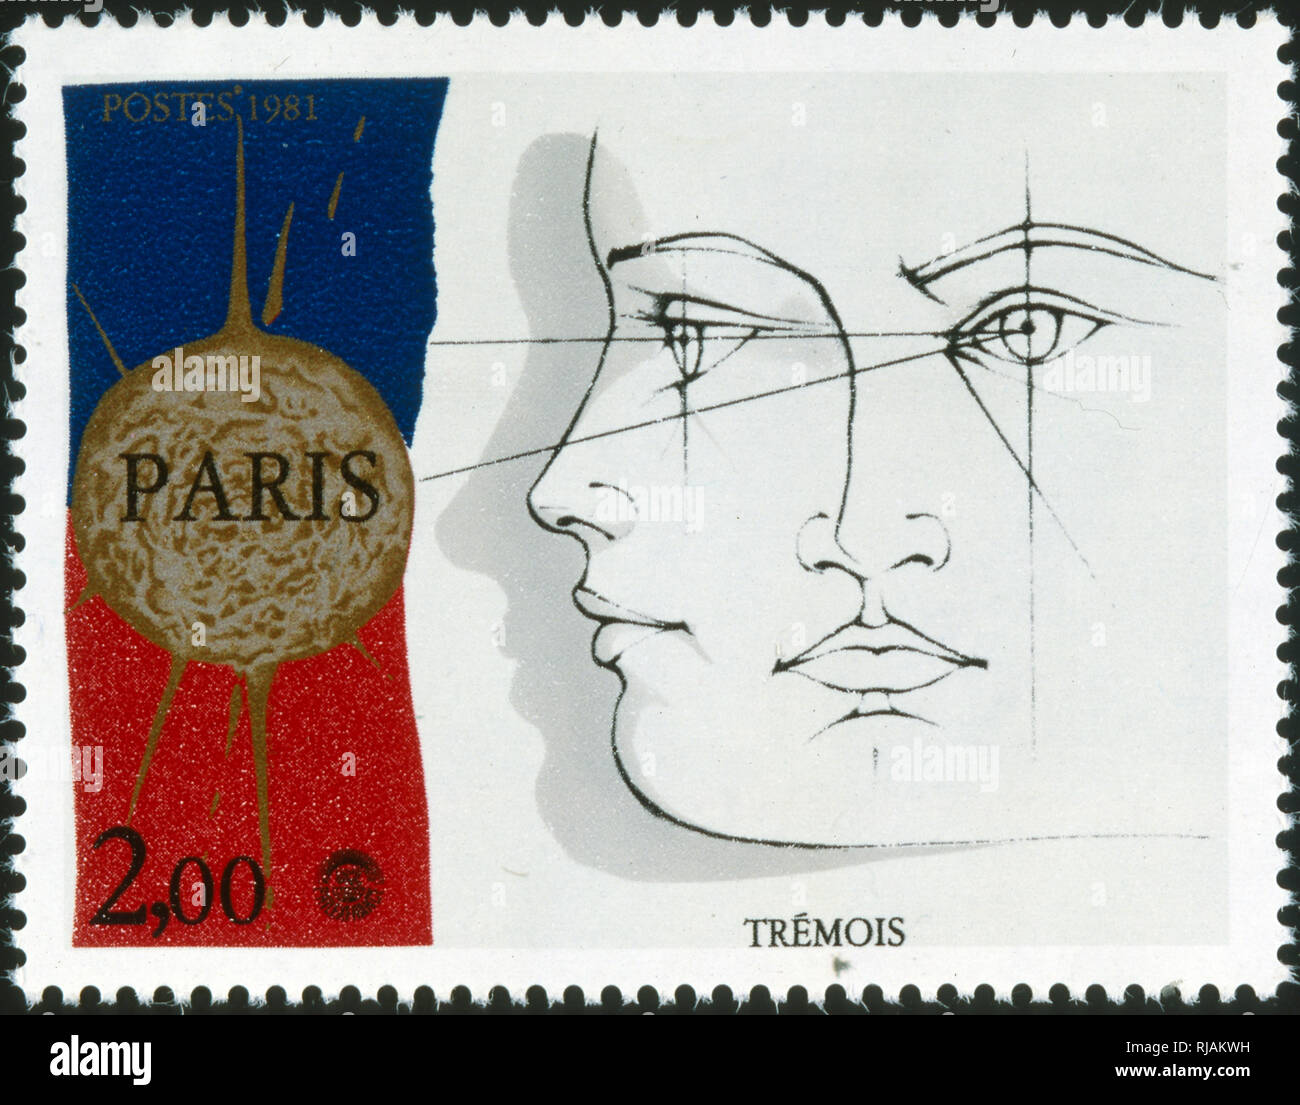 Il francese francobollo commemorativo Pierre-Yves Tremois (nato il 8 gennaio 1921 a Parigi), un francese di artista visivo e scultore. Egli è conosciuto per suggestive opere disegno in proporzioni uguali sul Surrealismo e illustrazione della scienza Foto Stock